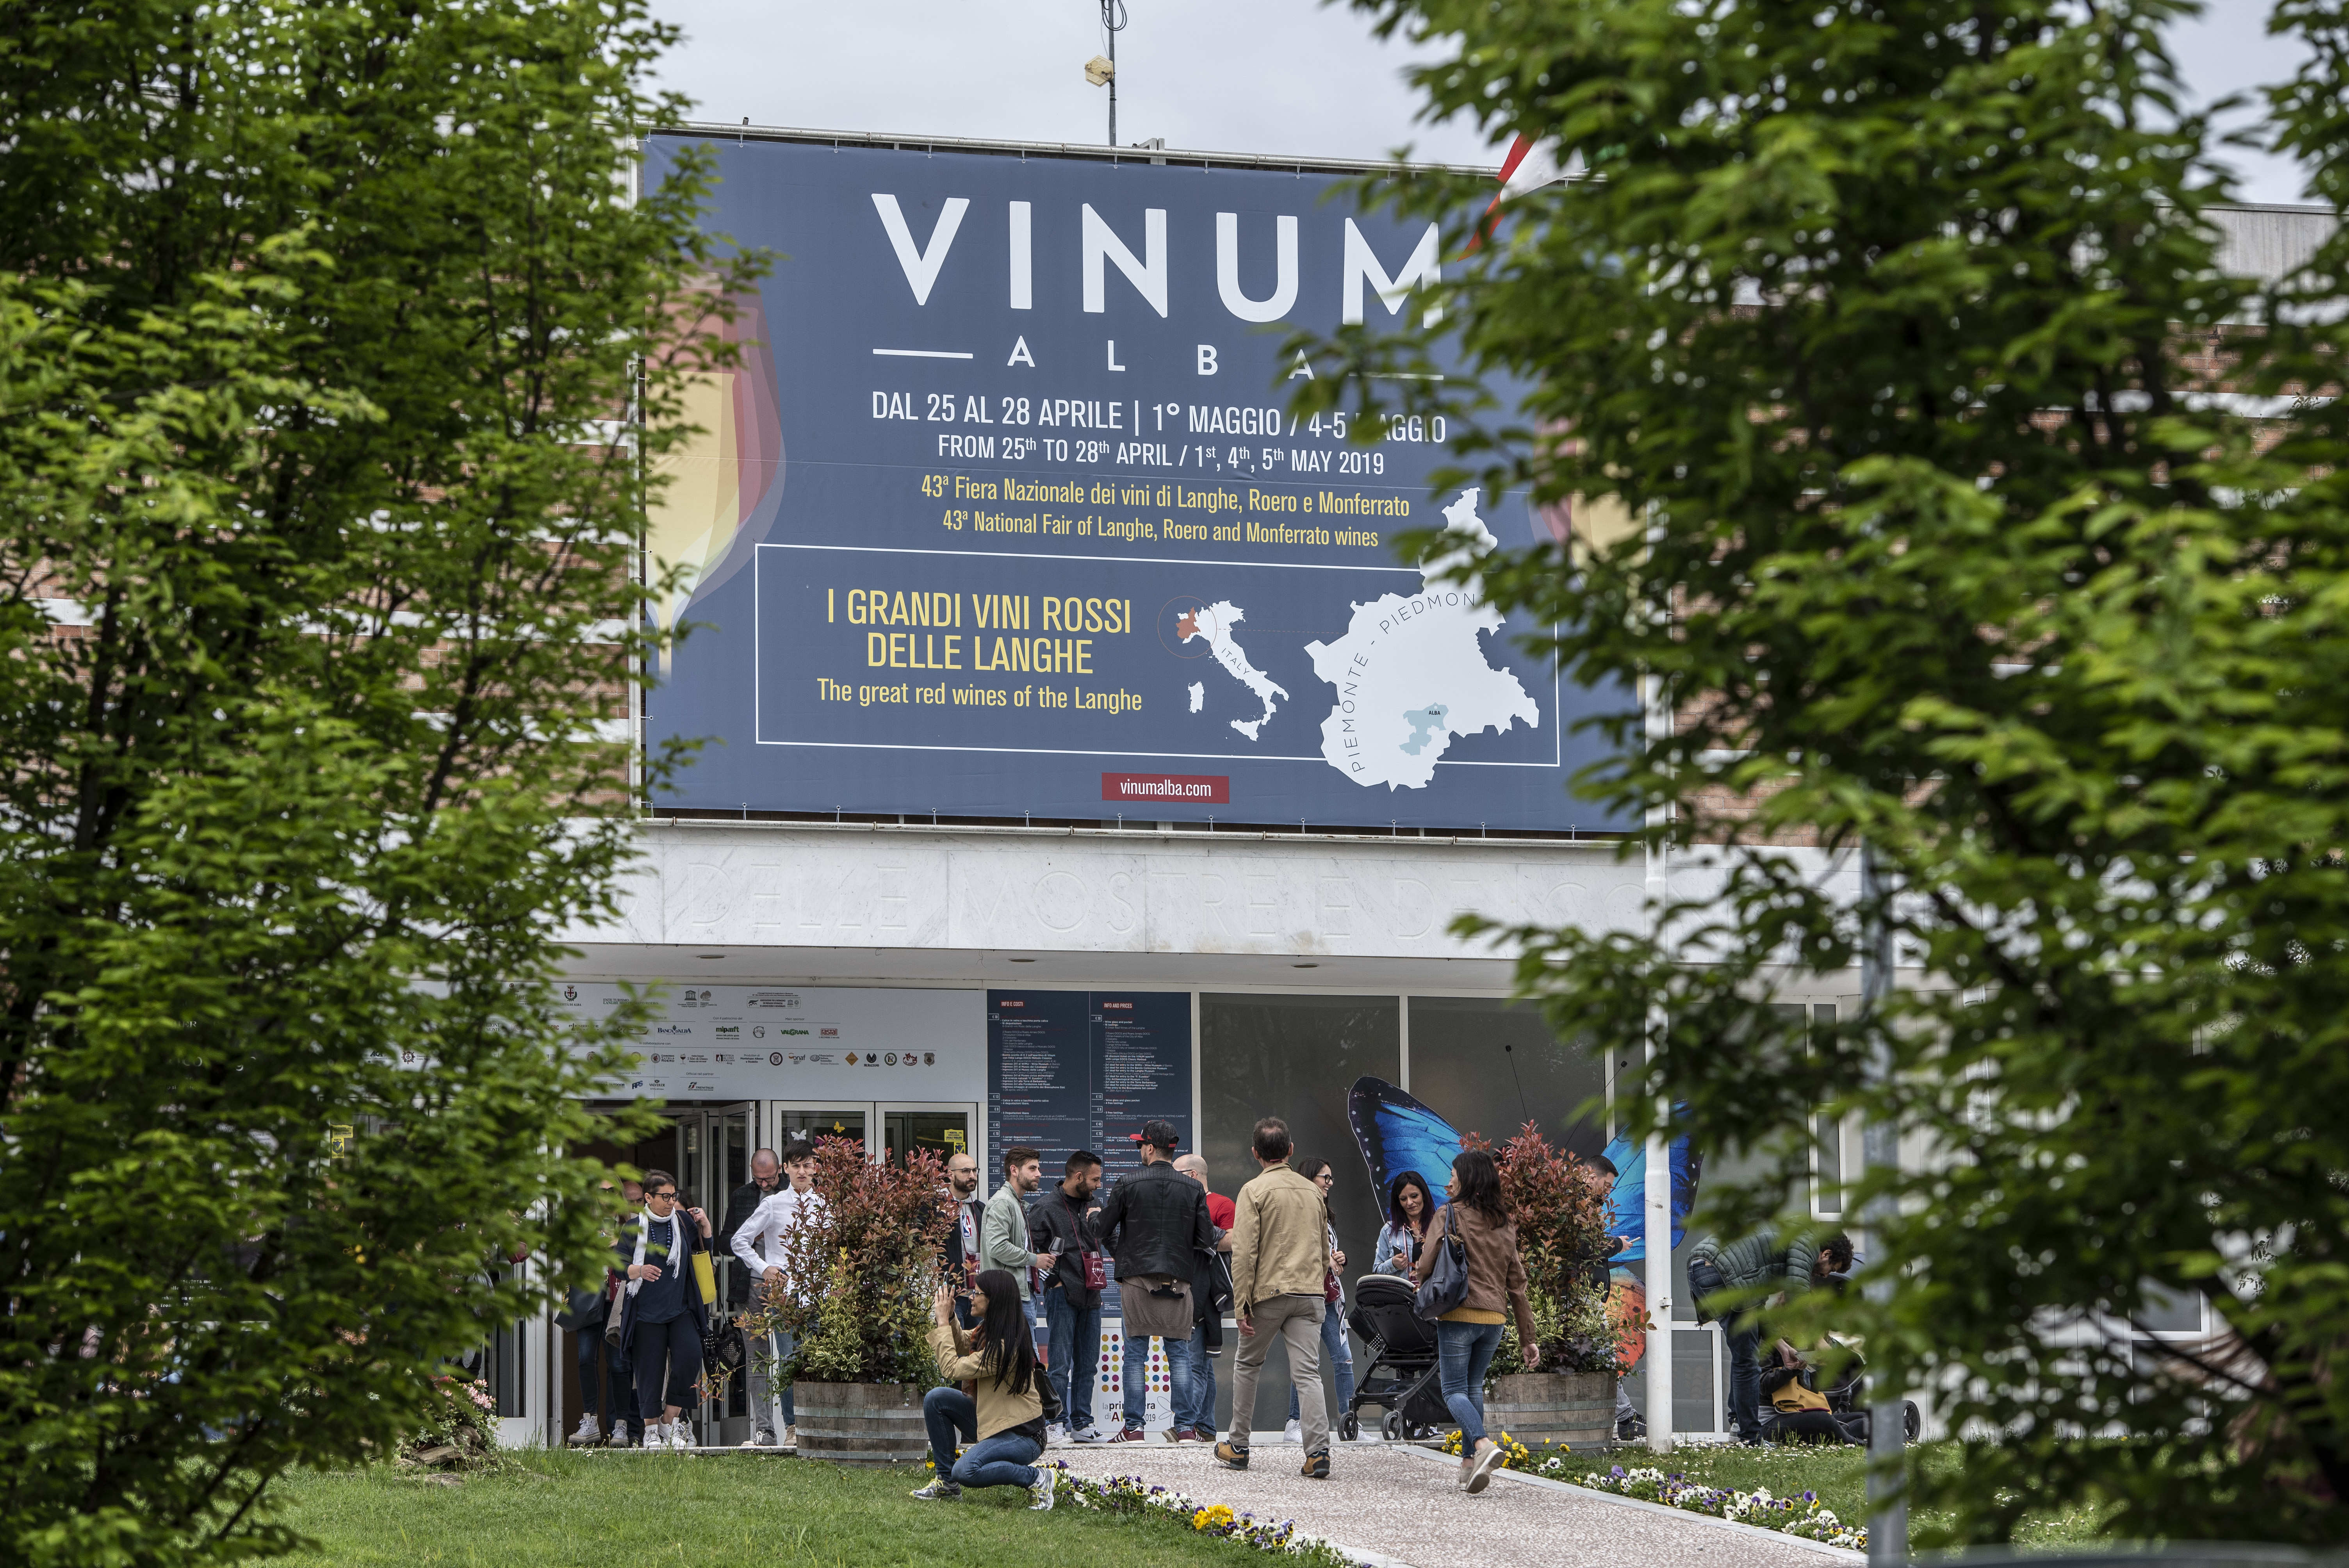 Ad Alba fino al 5 maggio la 43a edizione di Vinum